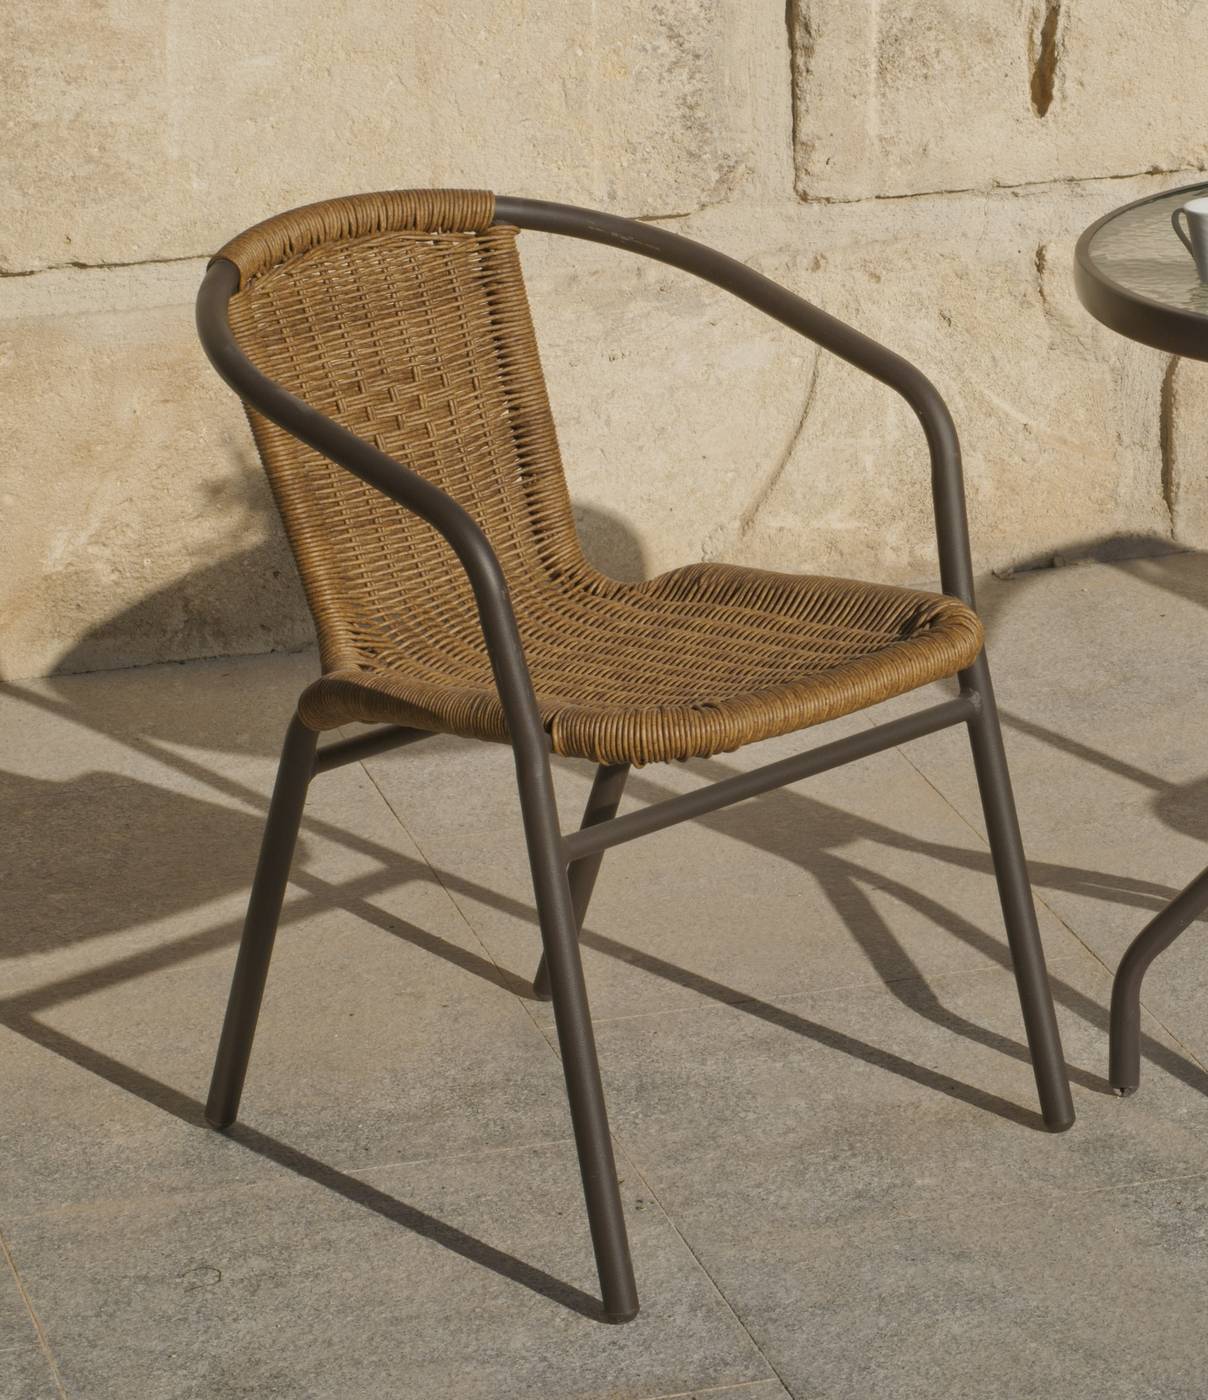 Sillón para jardín de aluminio color bronce, con respaldo y asiento de wicker reforzado